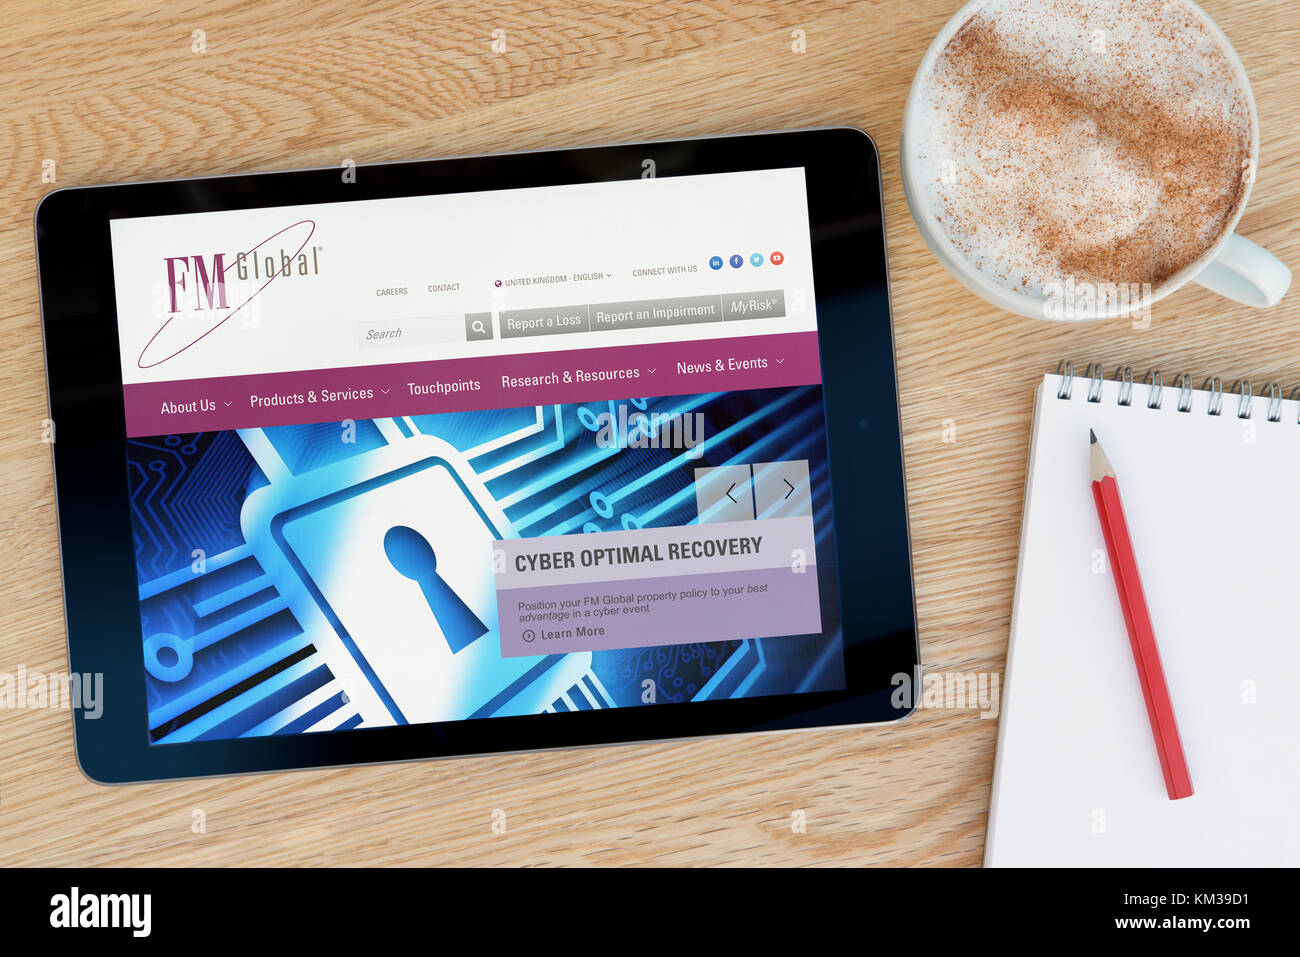 Le site web de l'assurance-FM Global sur un iPad tablet device qui repose sur une table en bois à côté d'un bloc-notes et un crayon et une tasse de café (rédaction uniquement) Banque D'Images